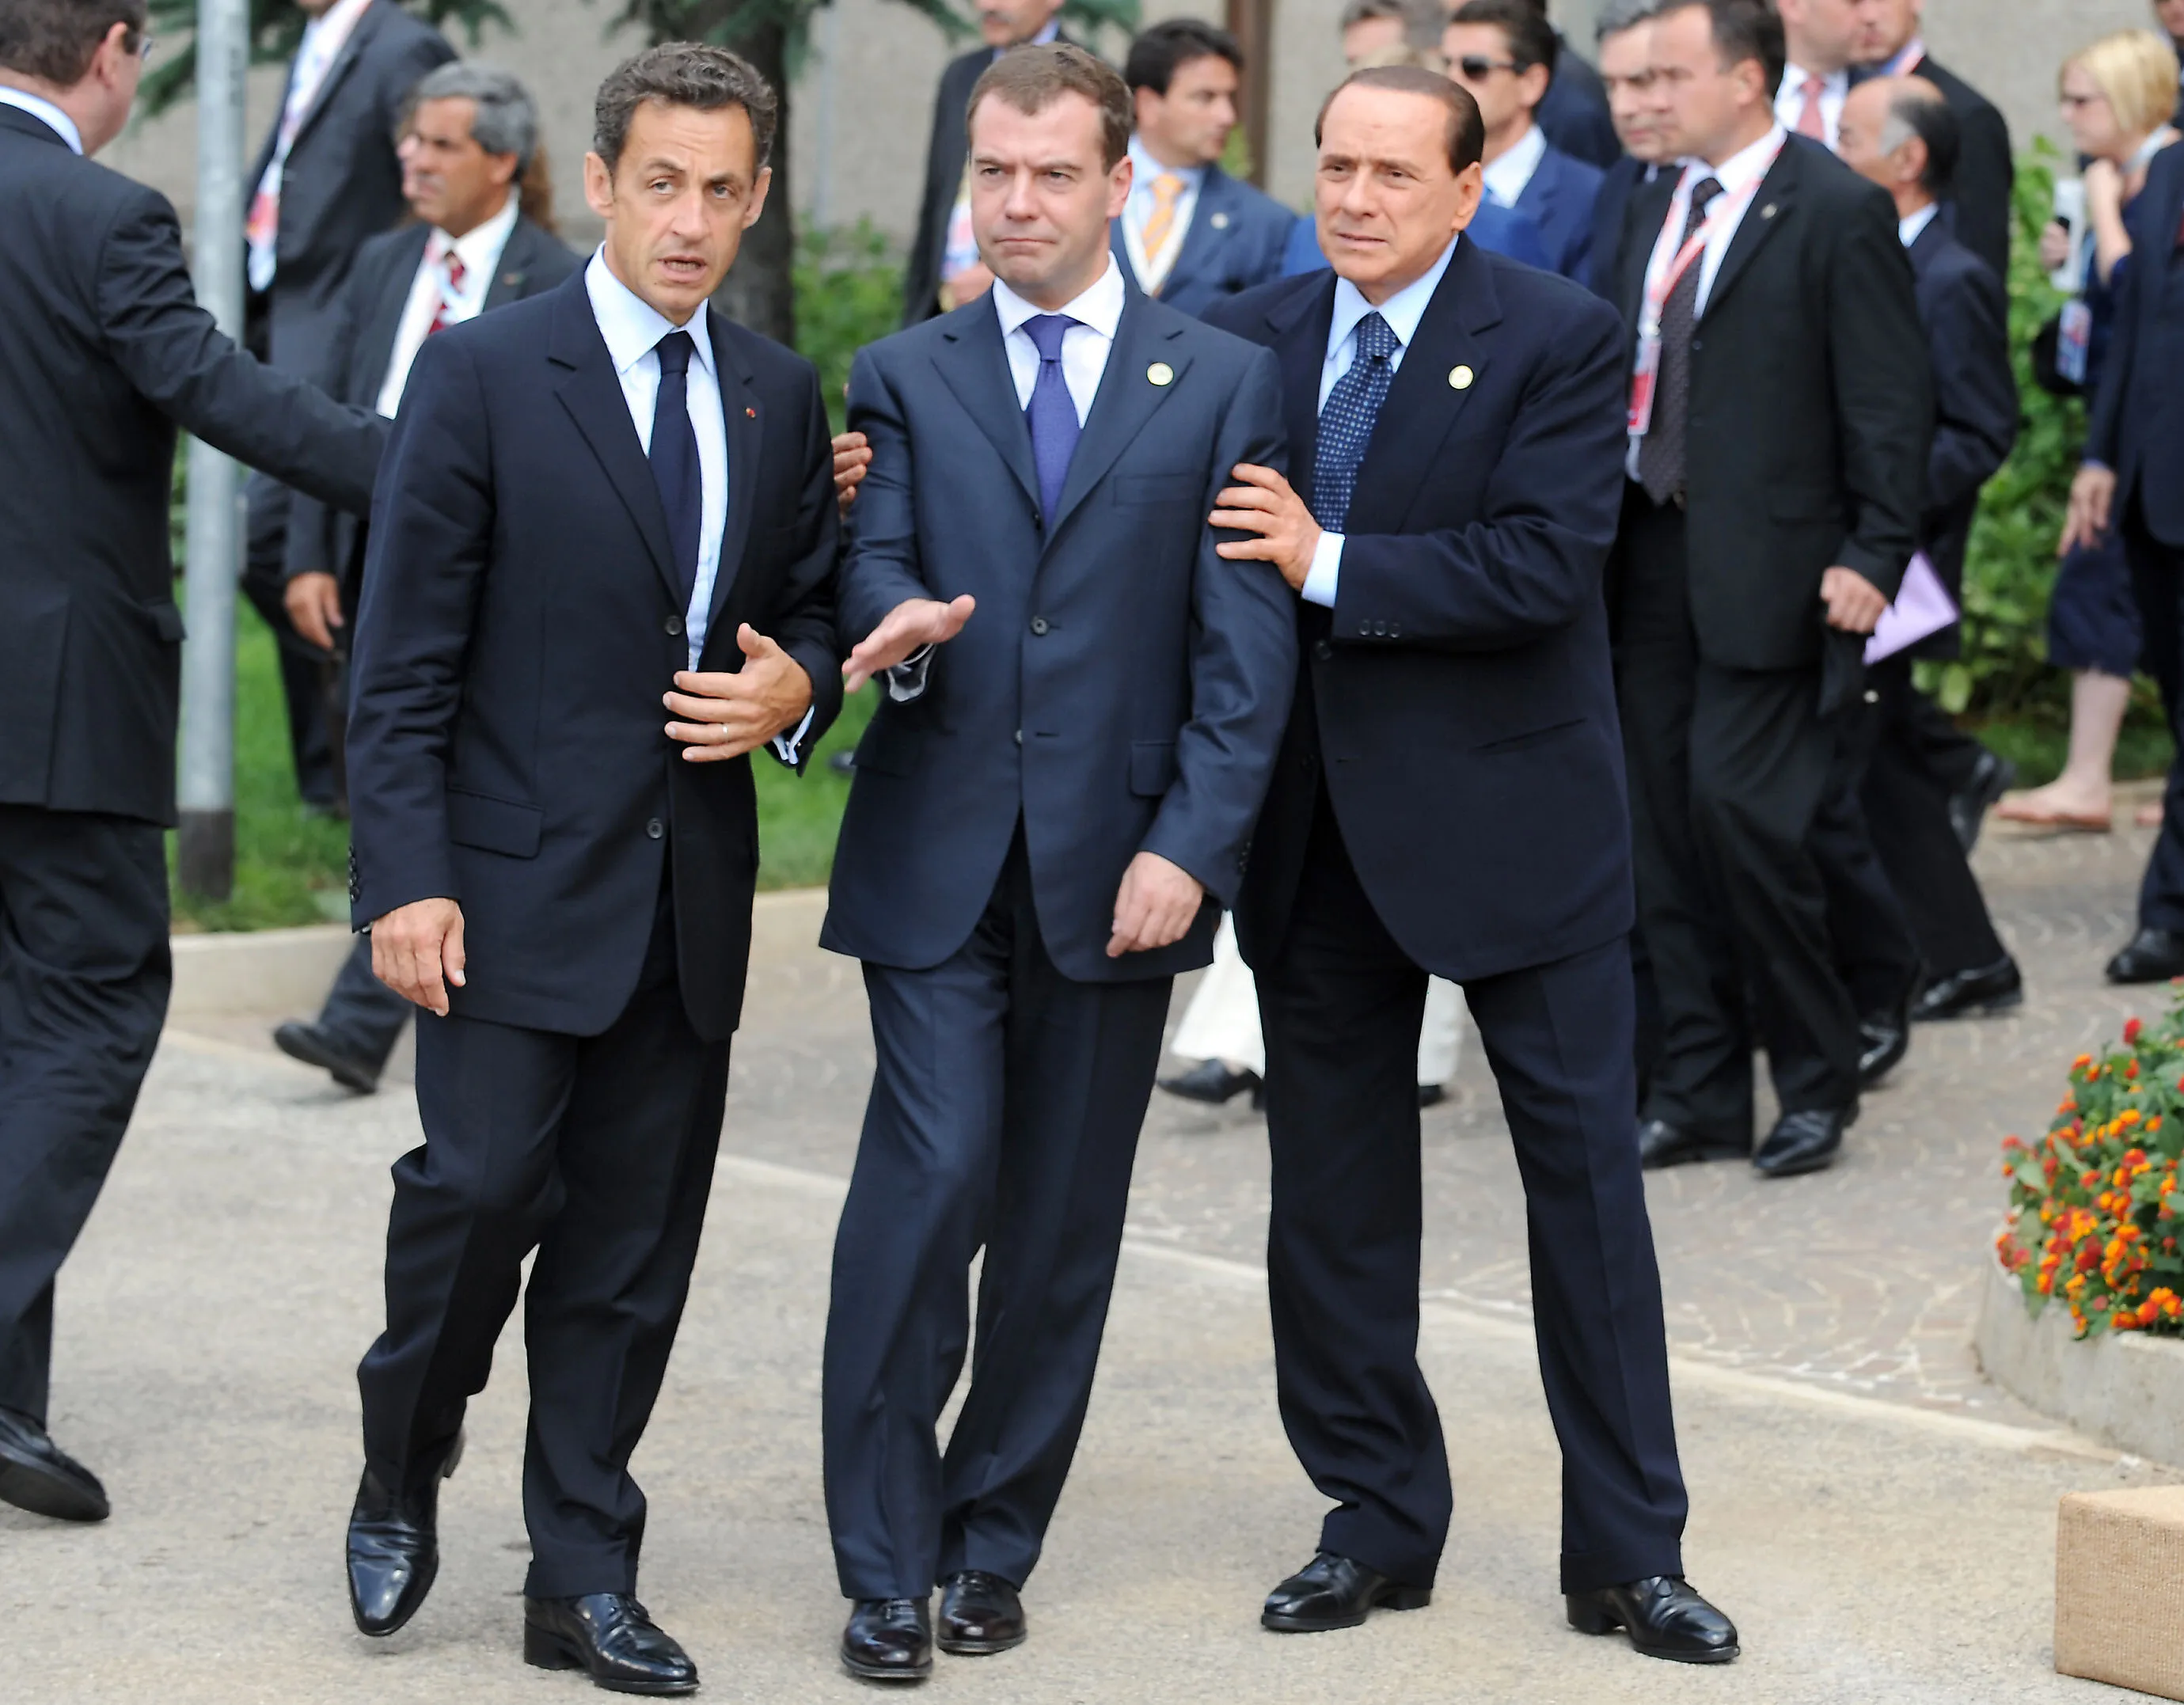 Политика и многое другое. Медведев Берлускони Саркози. Берлускони 2010 g8 Summit. Саркози Медведев Берлускони Обама.